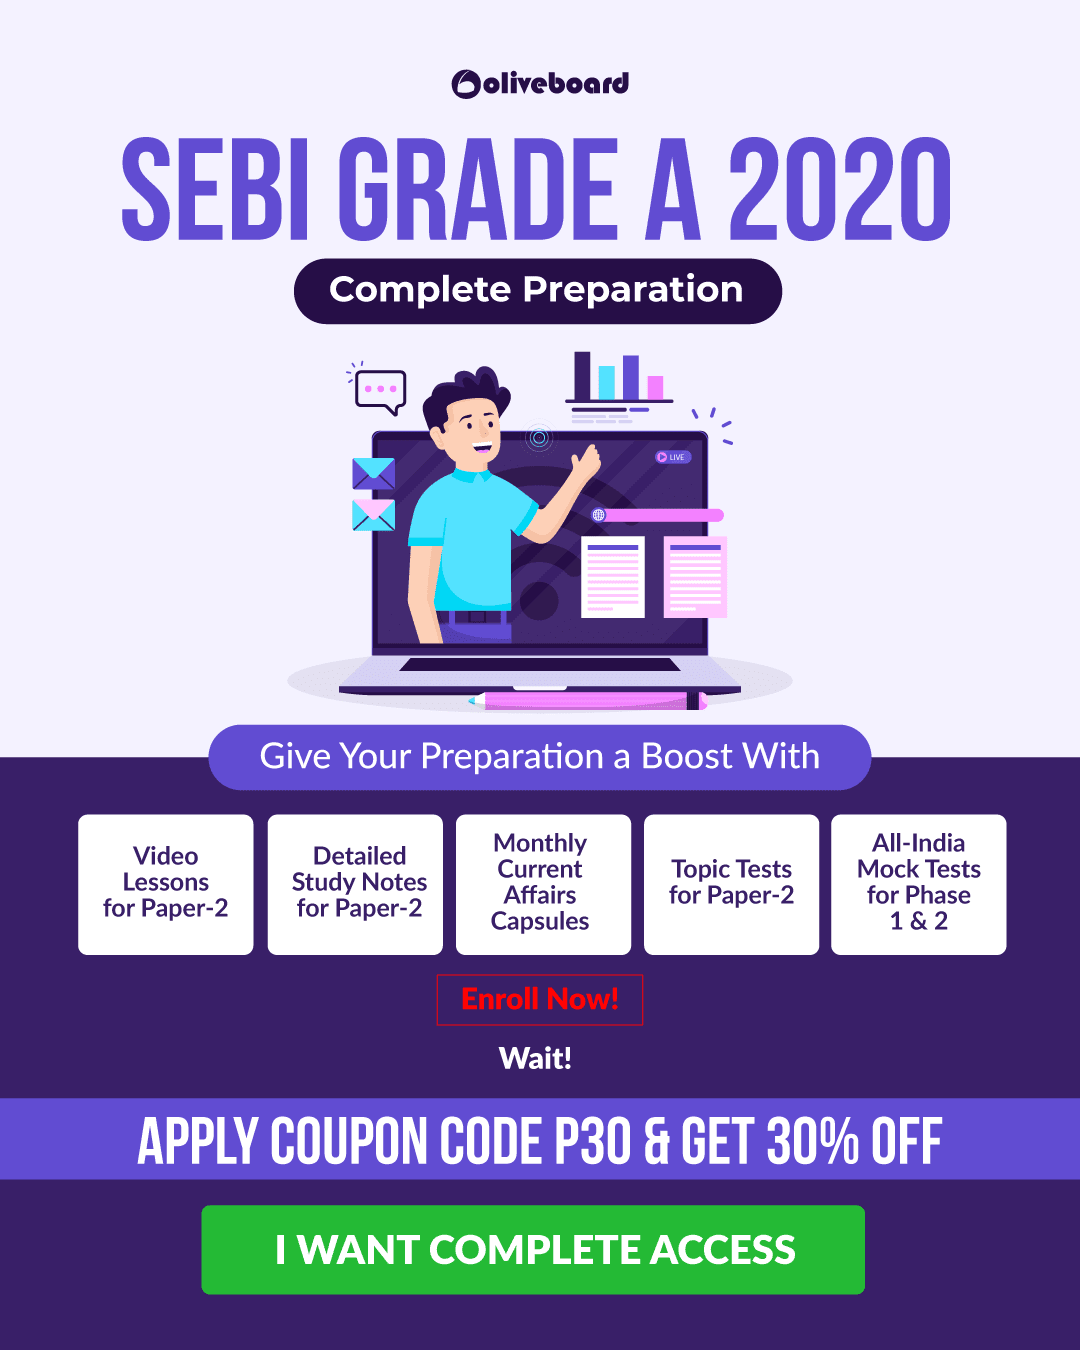 SEBI Grade A 2020 Course